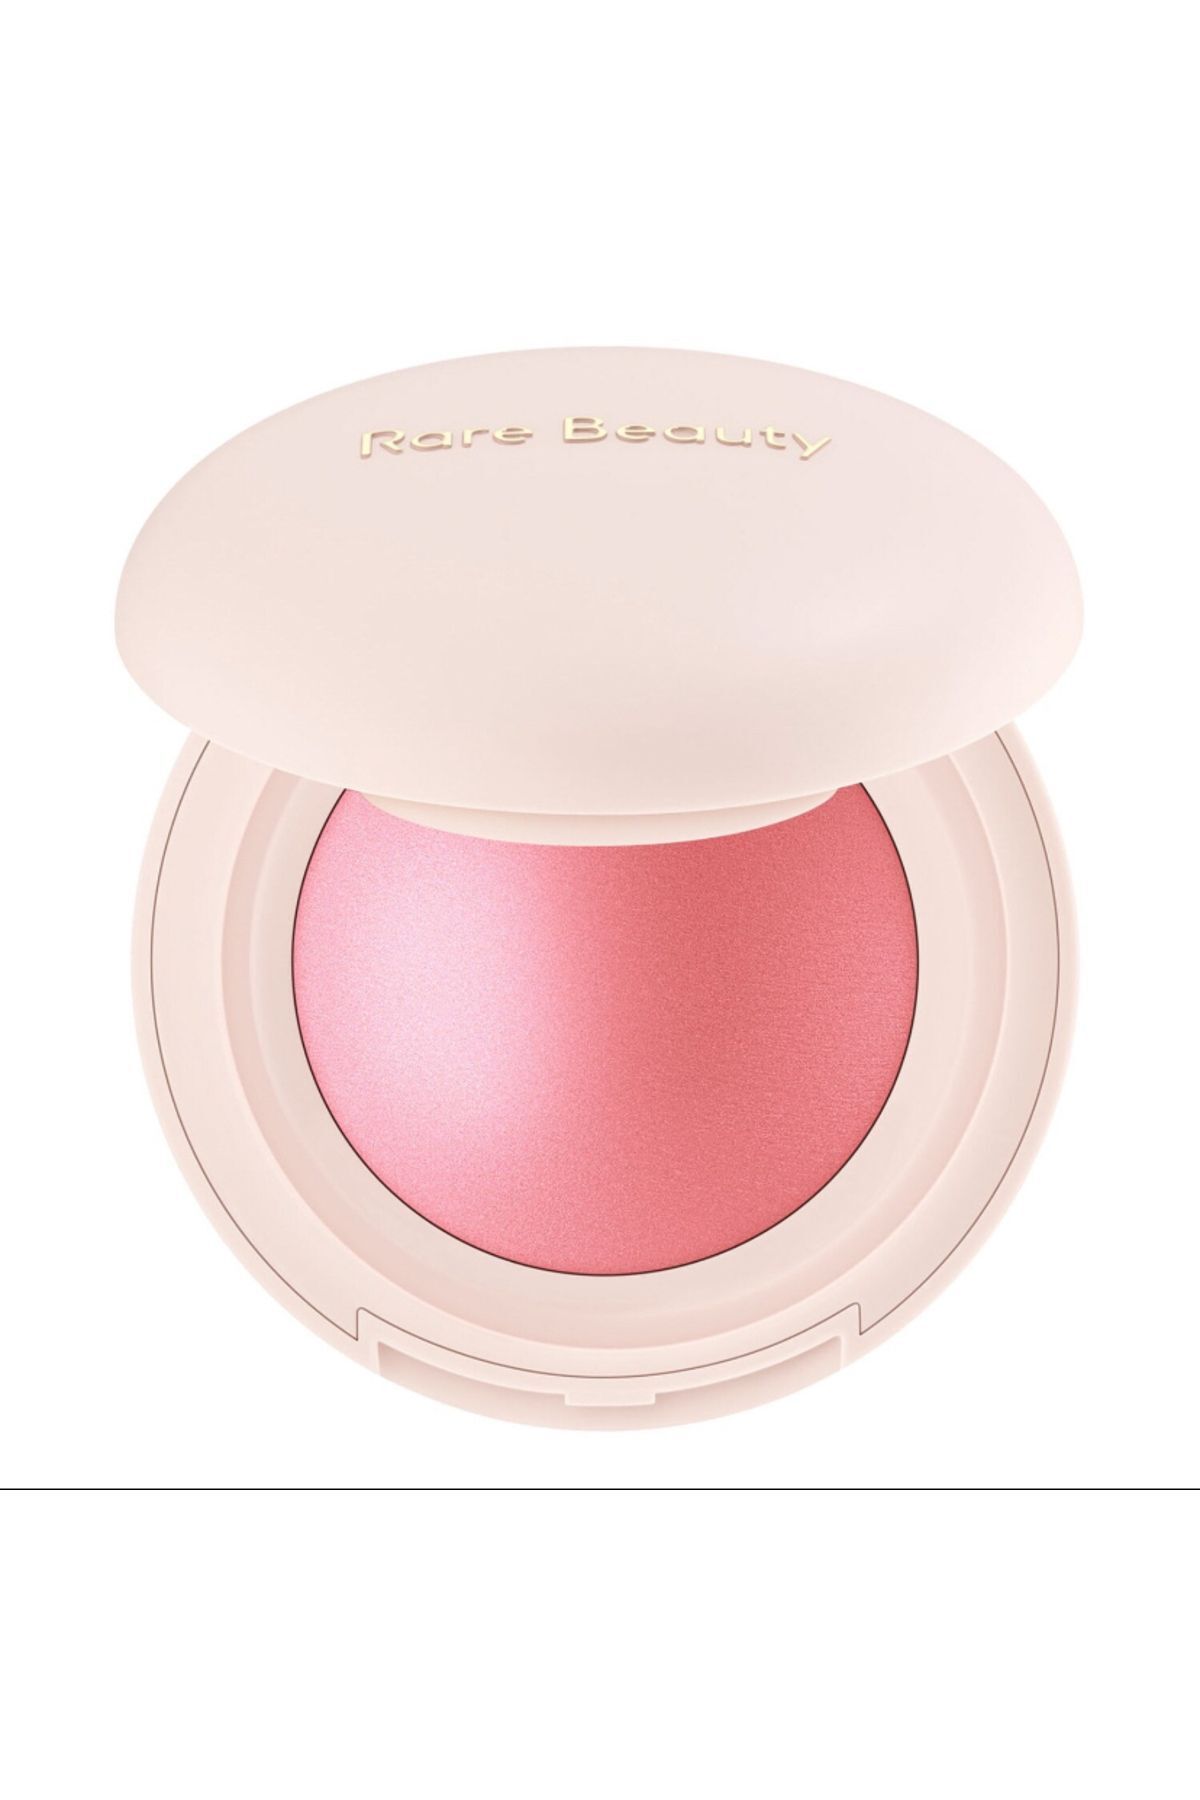 Rare Beauty Soft Pinch Luminous Powder BLUSH Pudra AllıkHAPPY Pinkestcosmetics